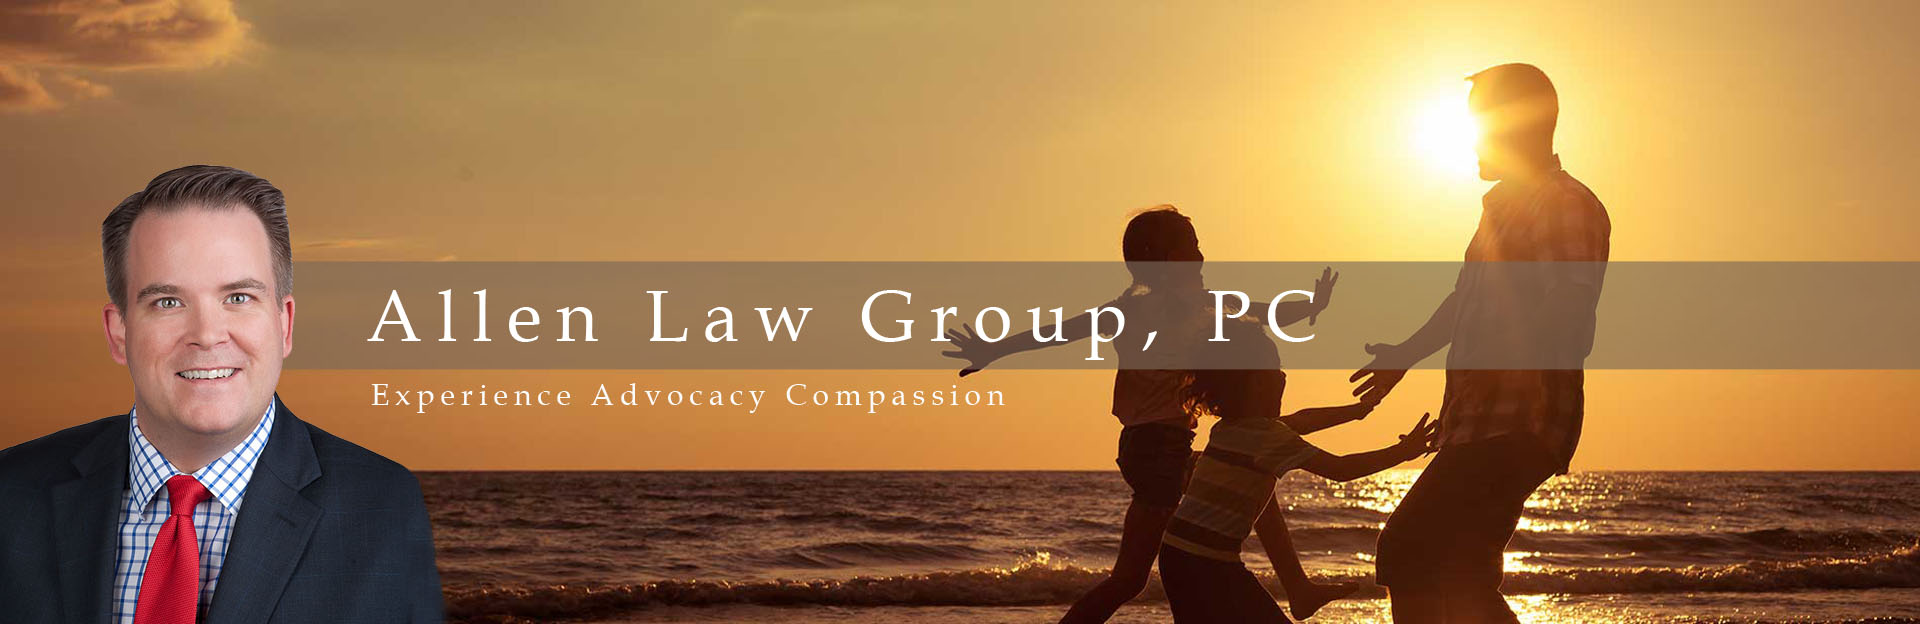 Allen Law Group, PC